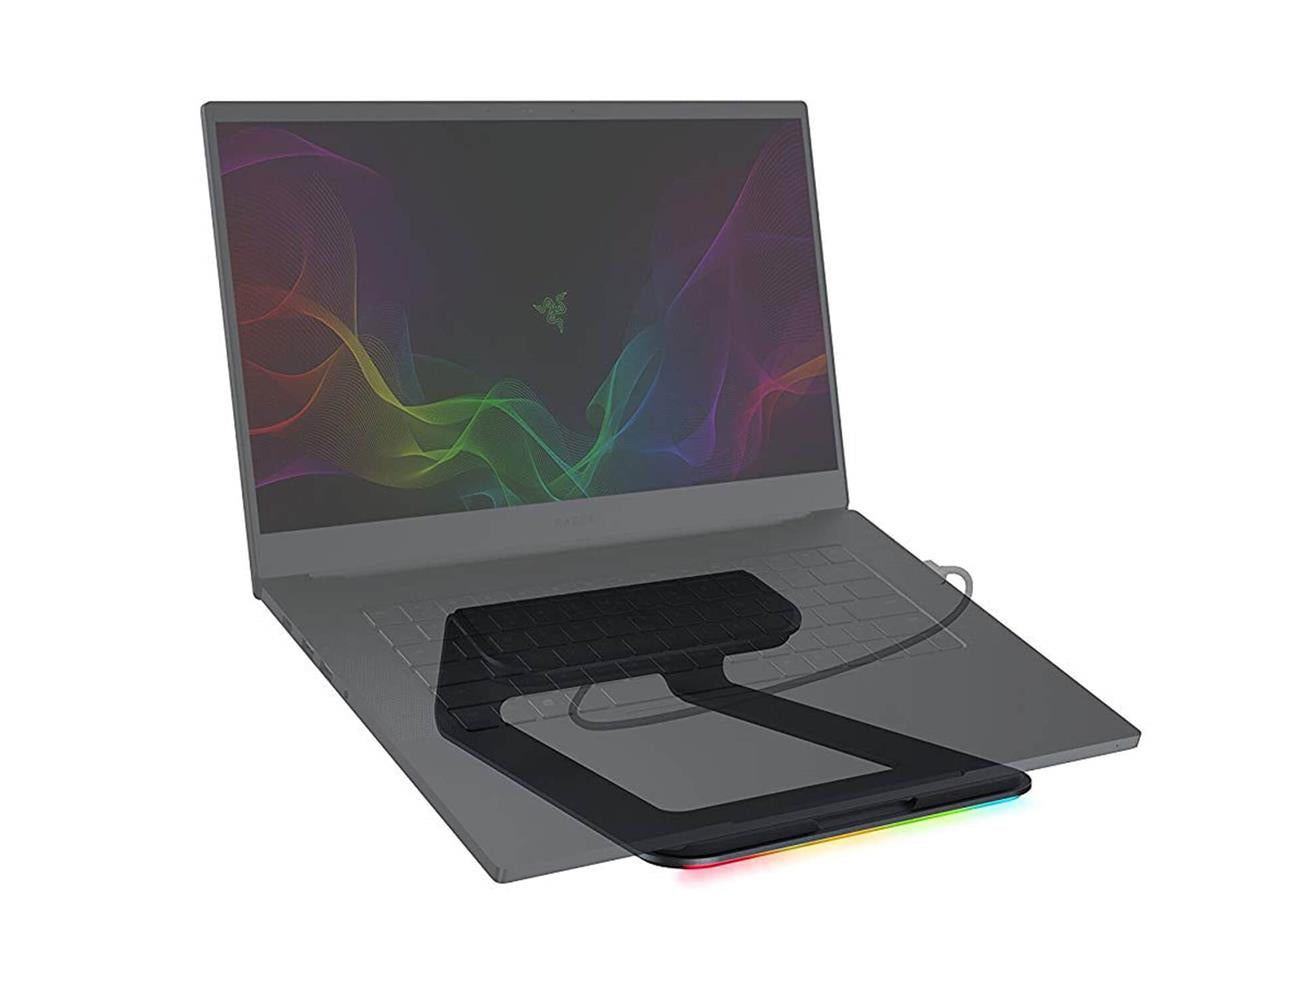 Razer Chroma Laptop Stand with 3 USB Hub